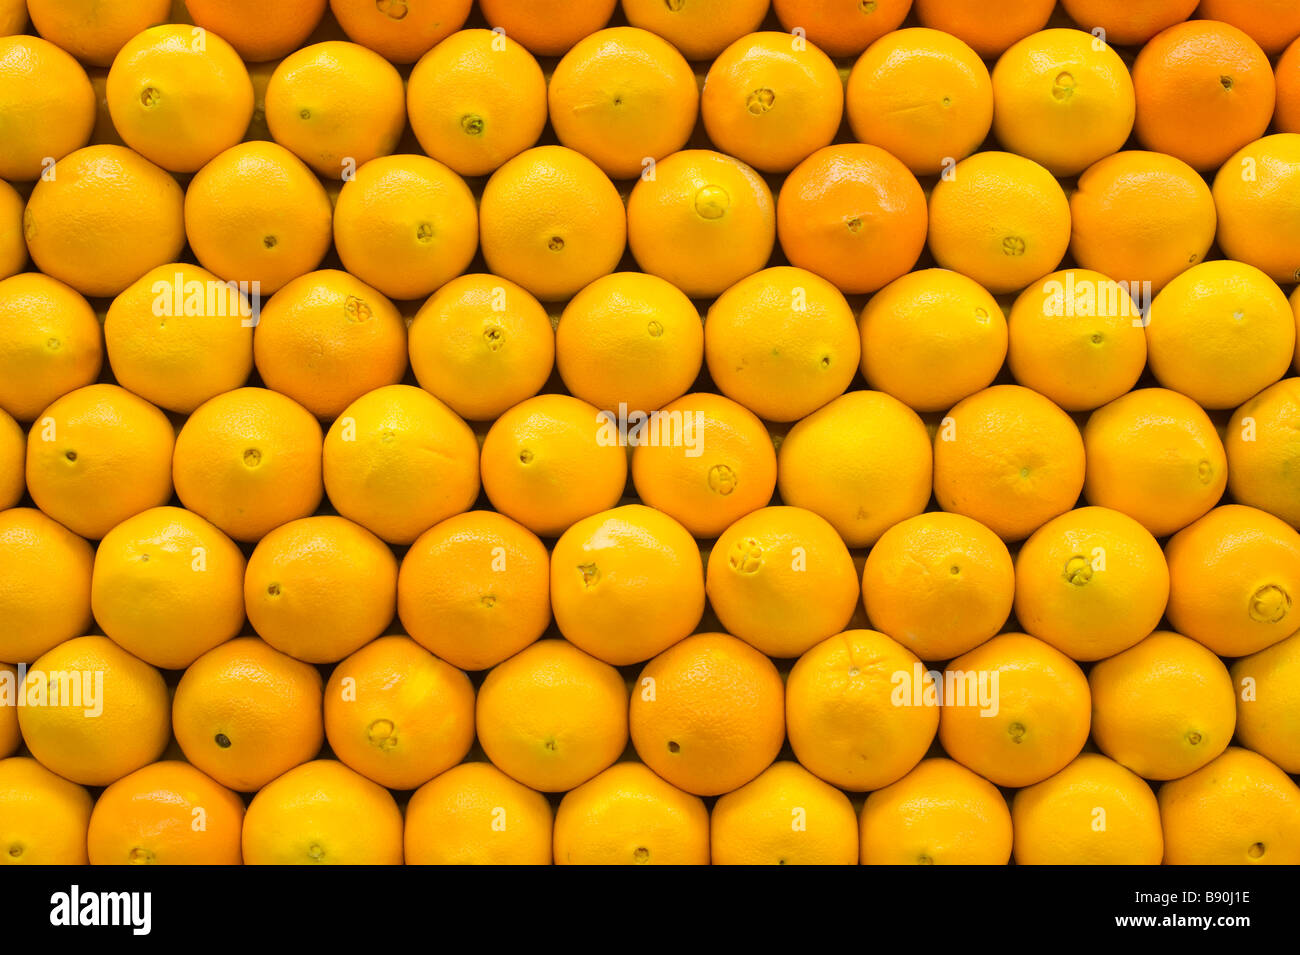 Las naranjas brillantes alineadas simétricamente Foto de stock